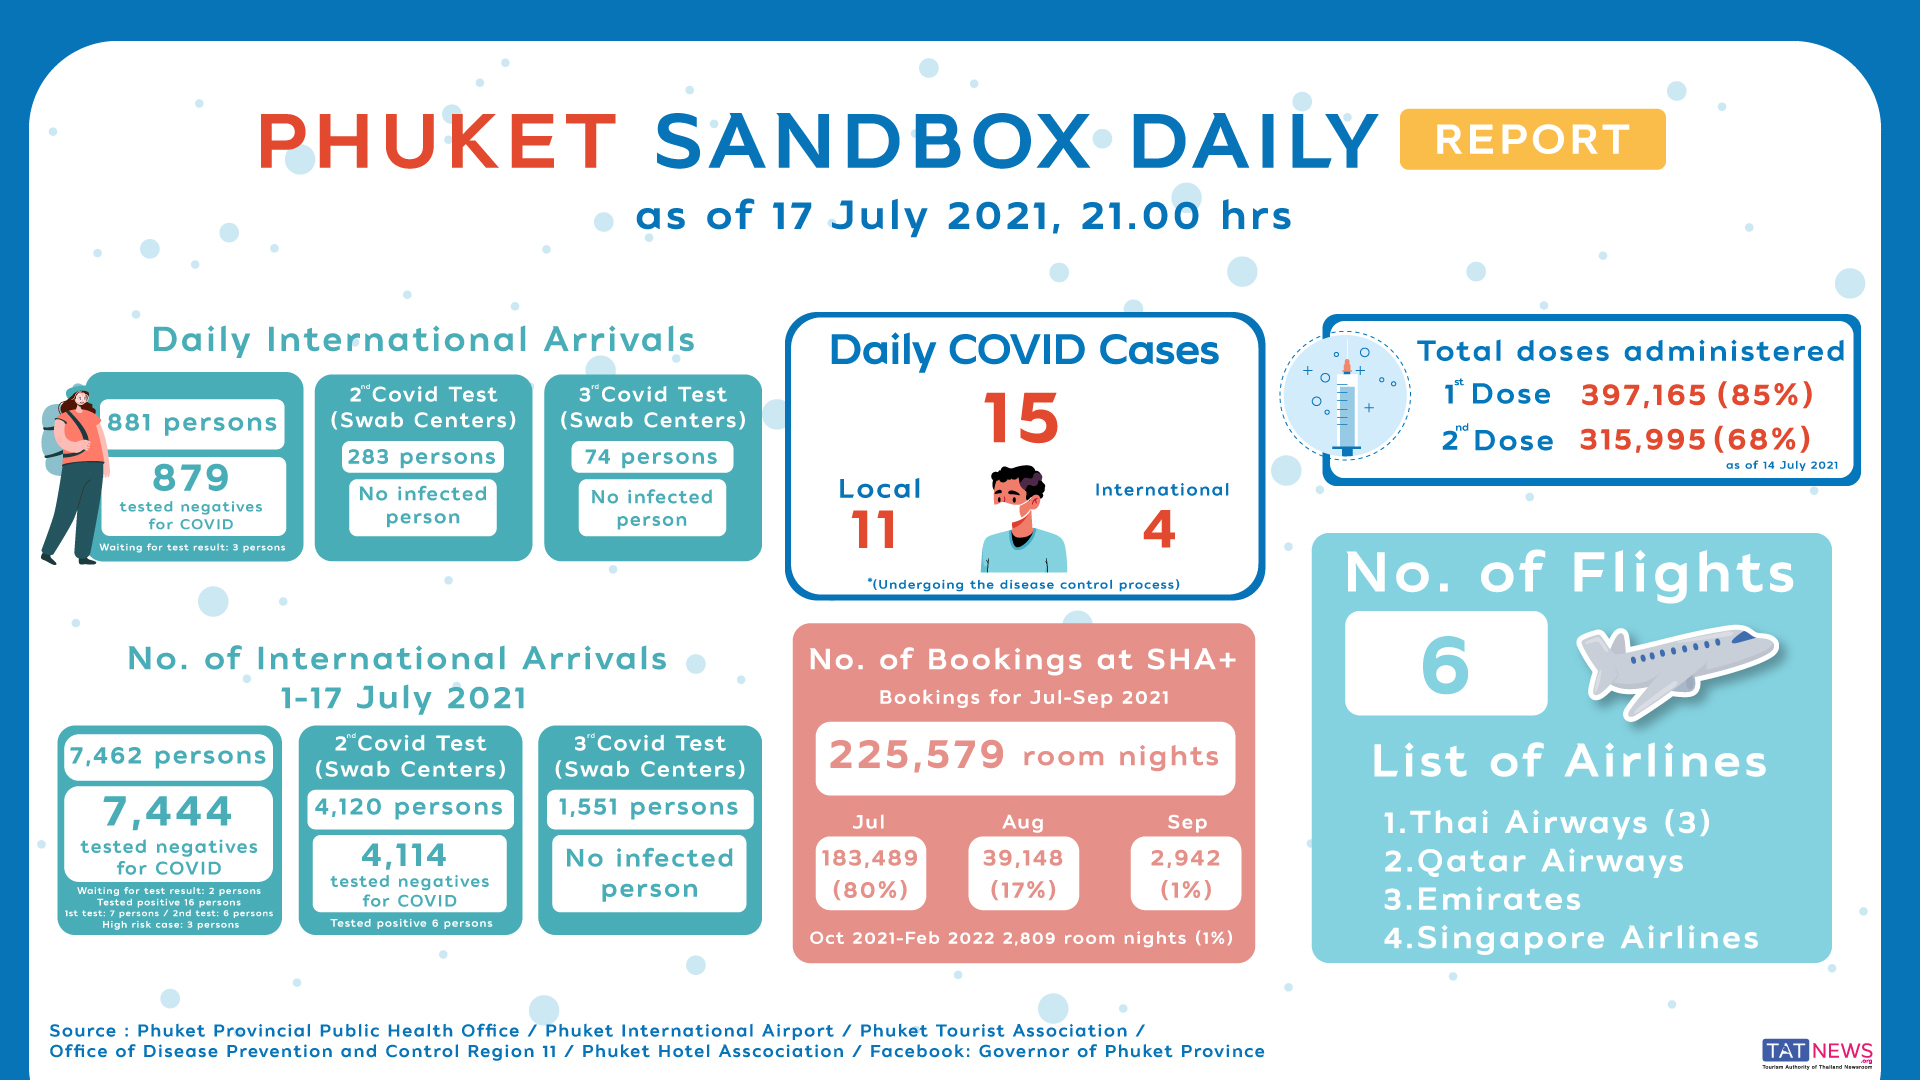 Phuket-Sandbox-Daily-Report-as-of-17July2021.jpeg